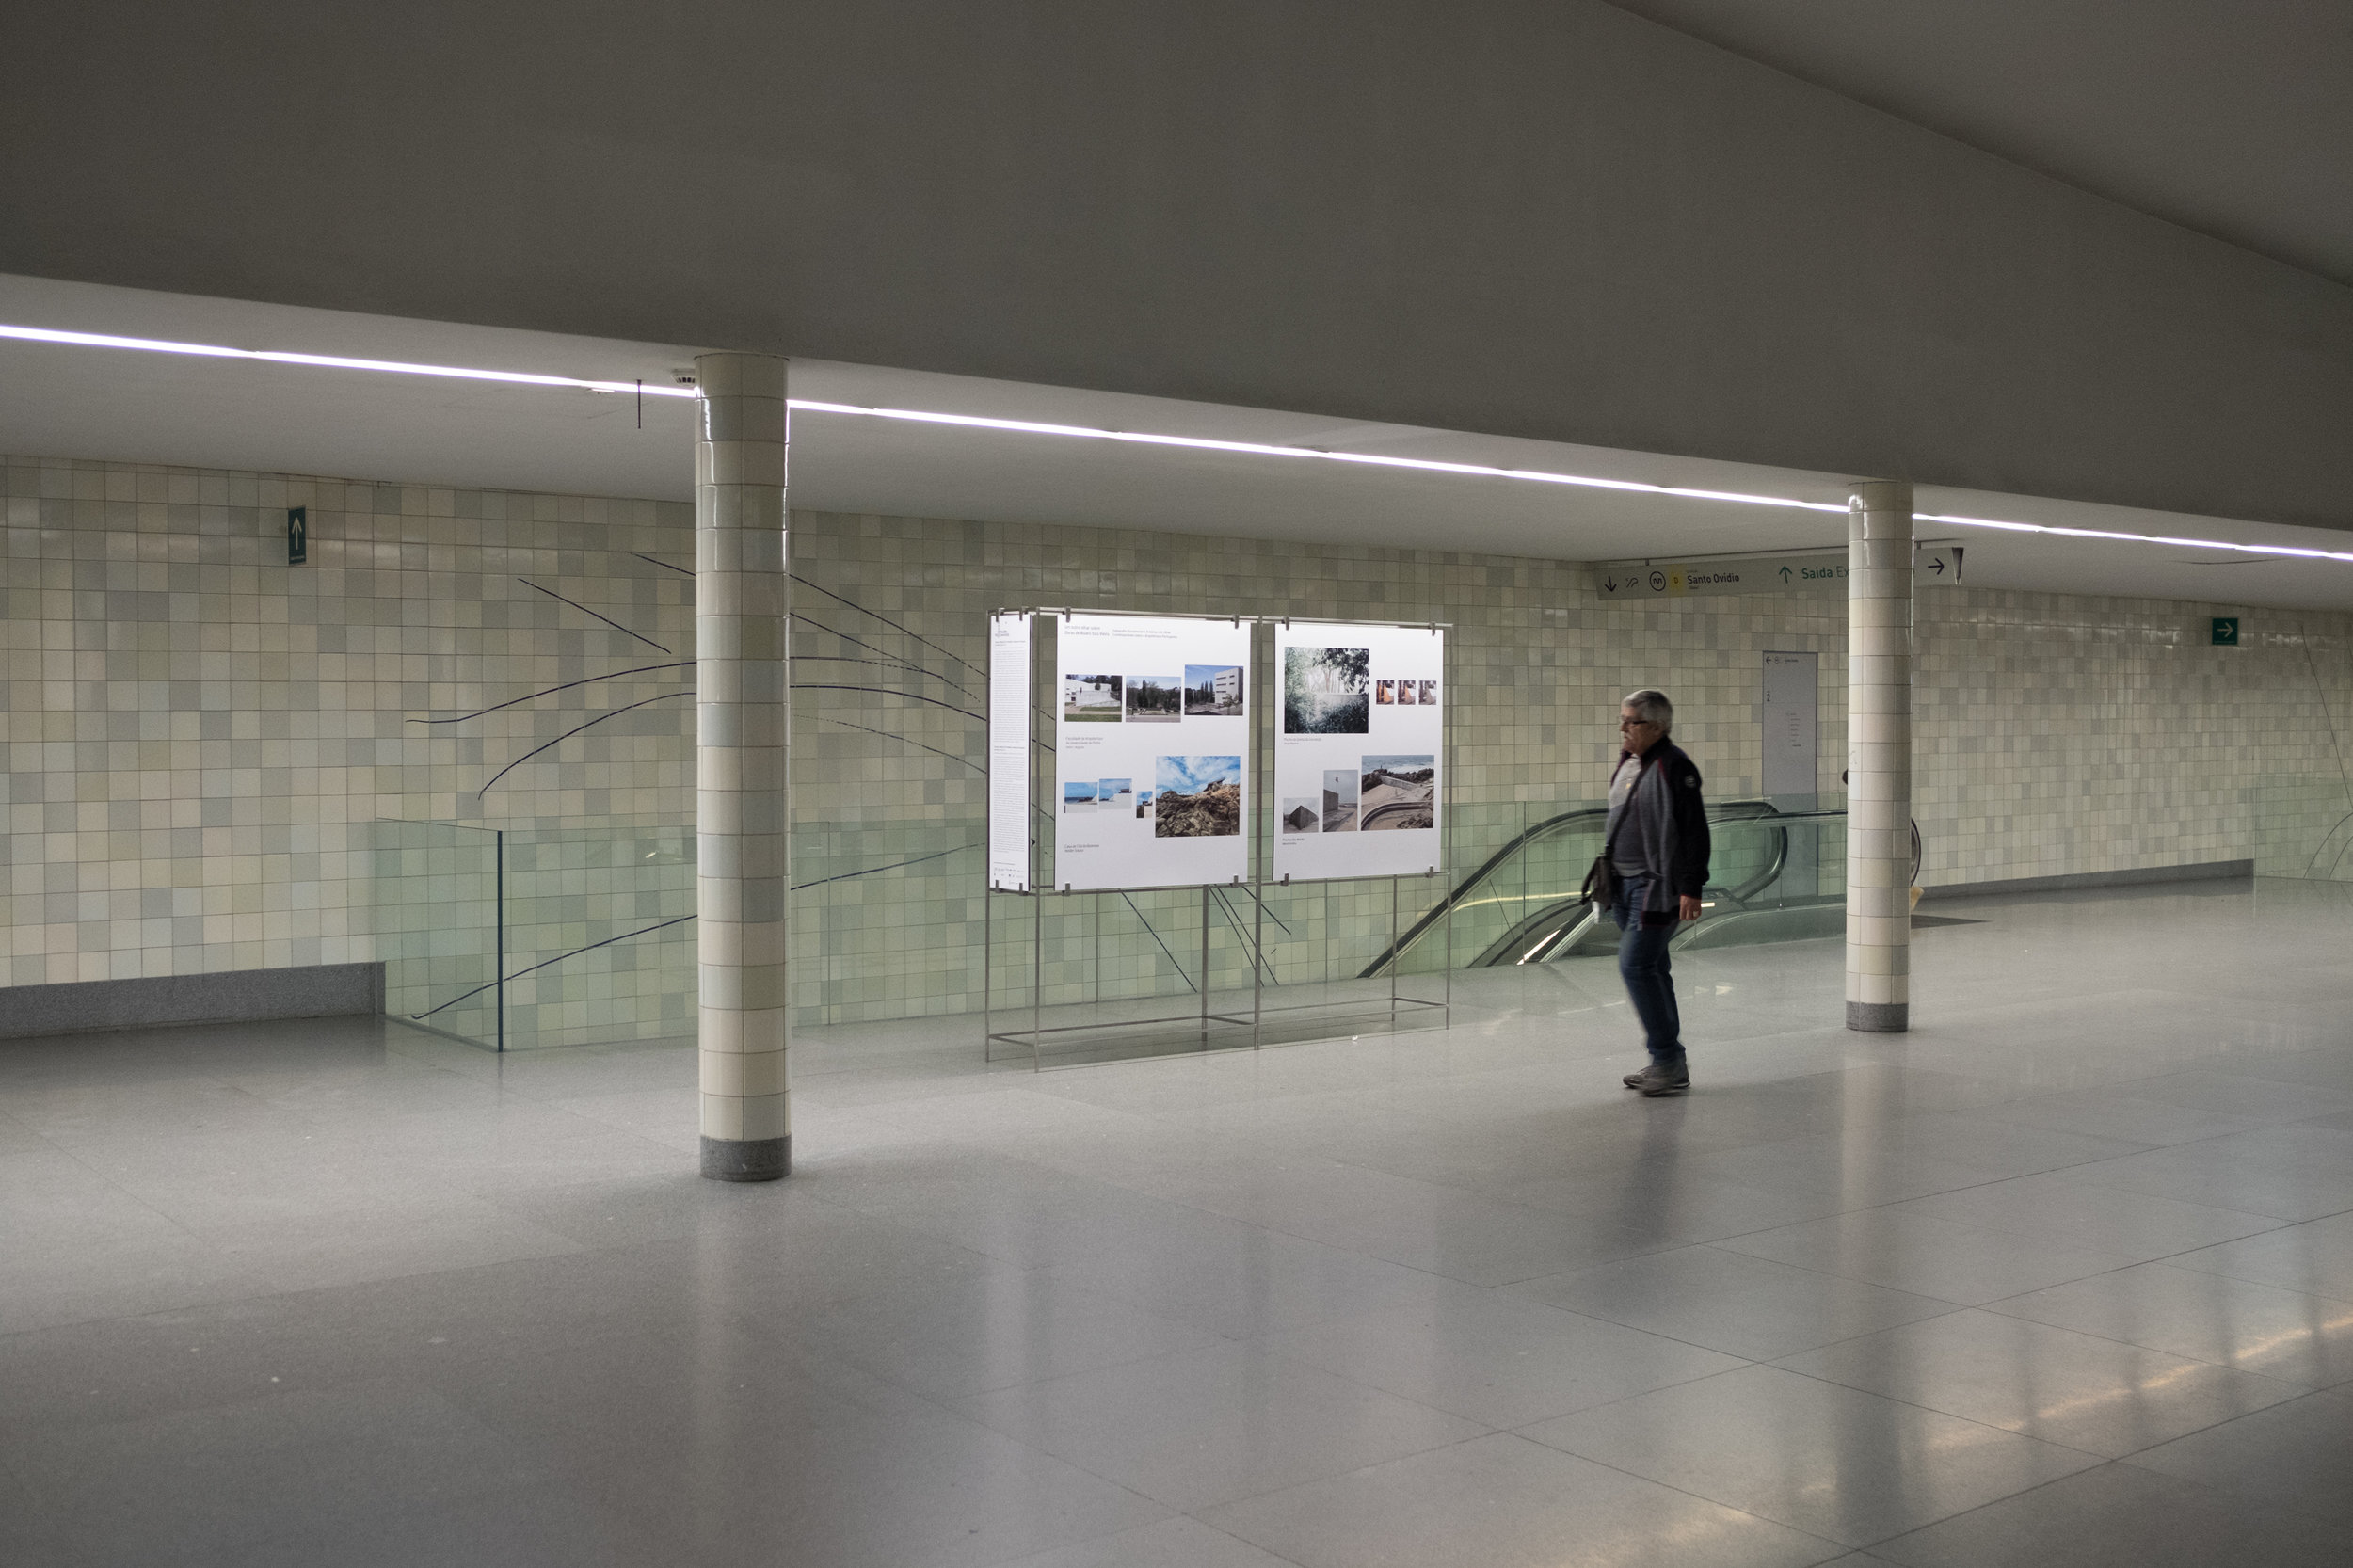  Visita Guiadas com Autores Visual Spaces of Change: Estações de Metro da Avenida dos Aliados e São Bento, OASRN 